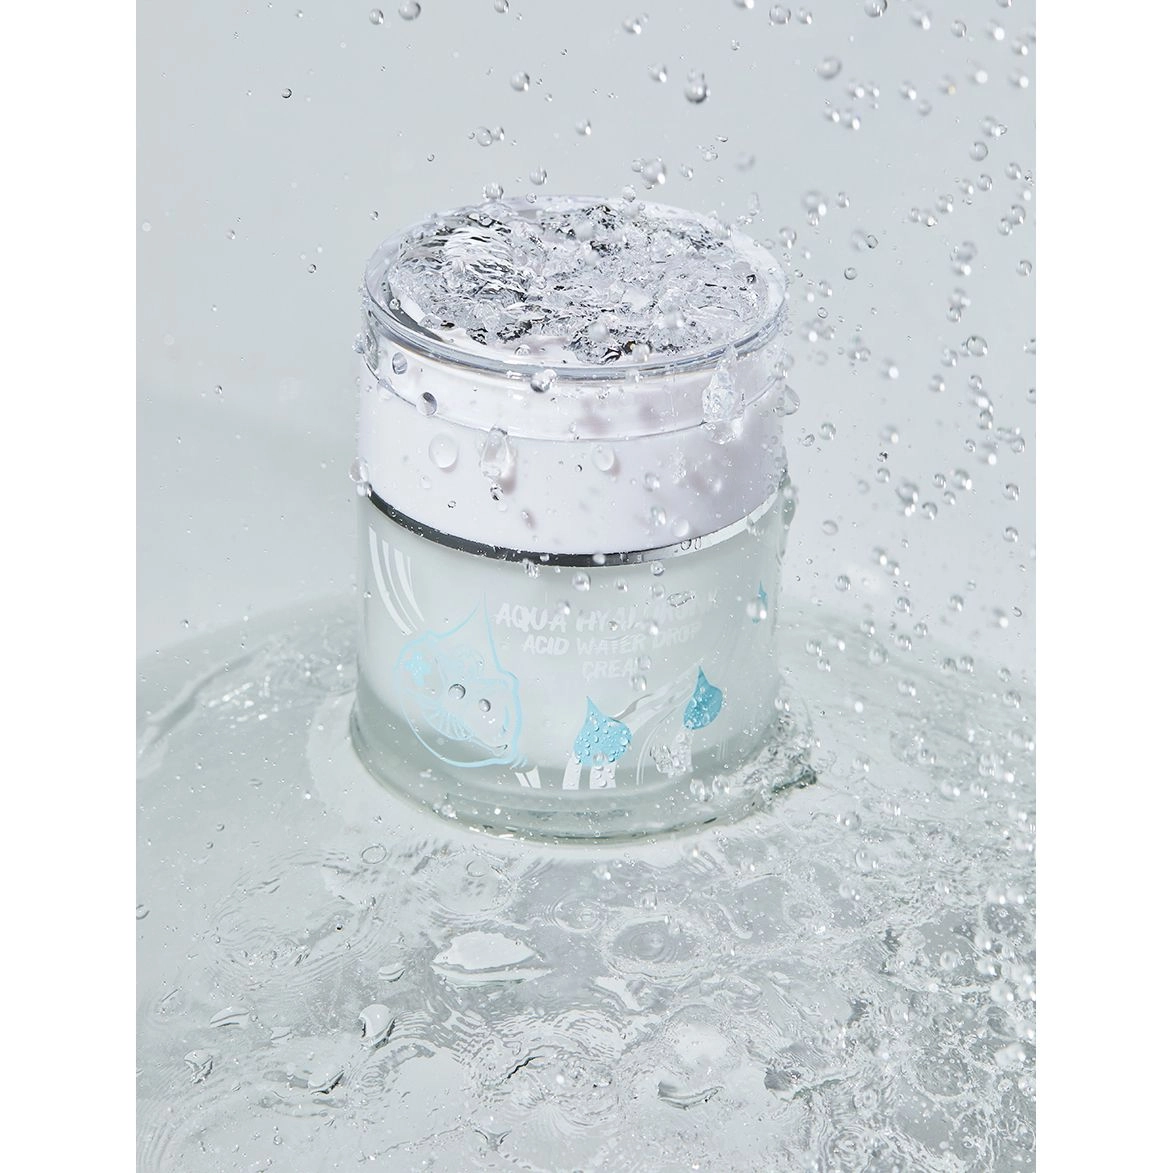 Крем для лица увлажняющий гиалуроновый - Elizavecca Face Care Aqua Hyaluronic Acid Water Drop Cream, 50 мл - фото N8